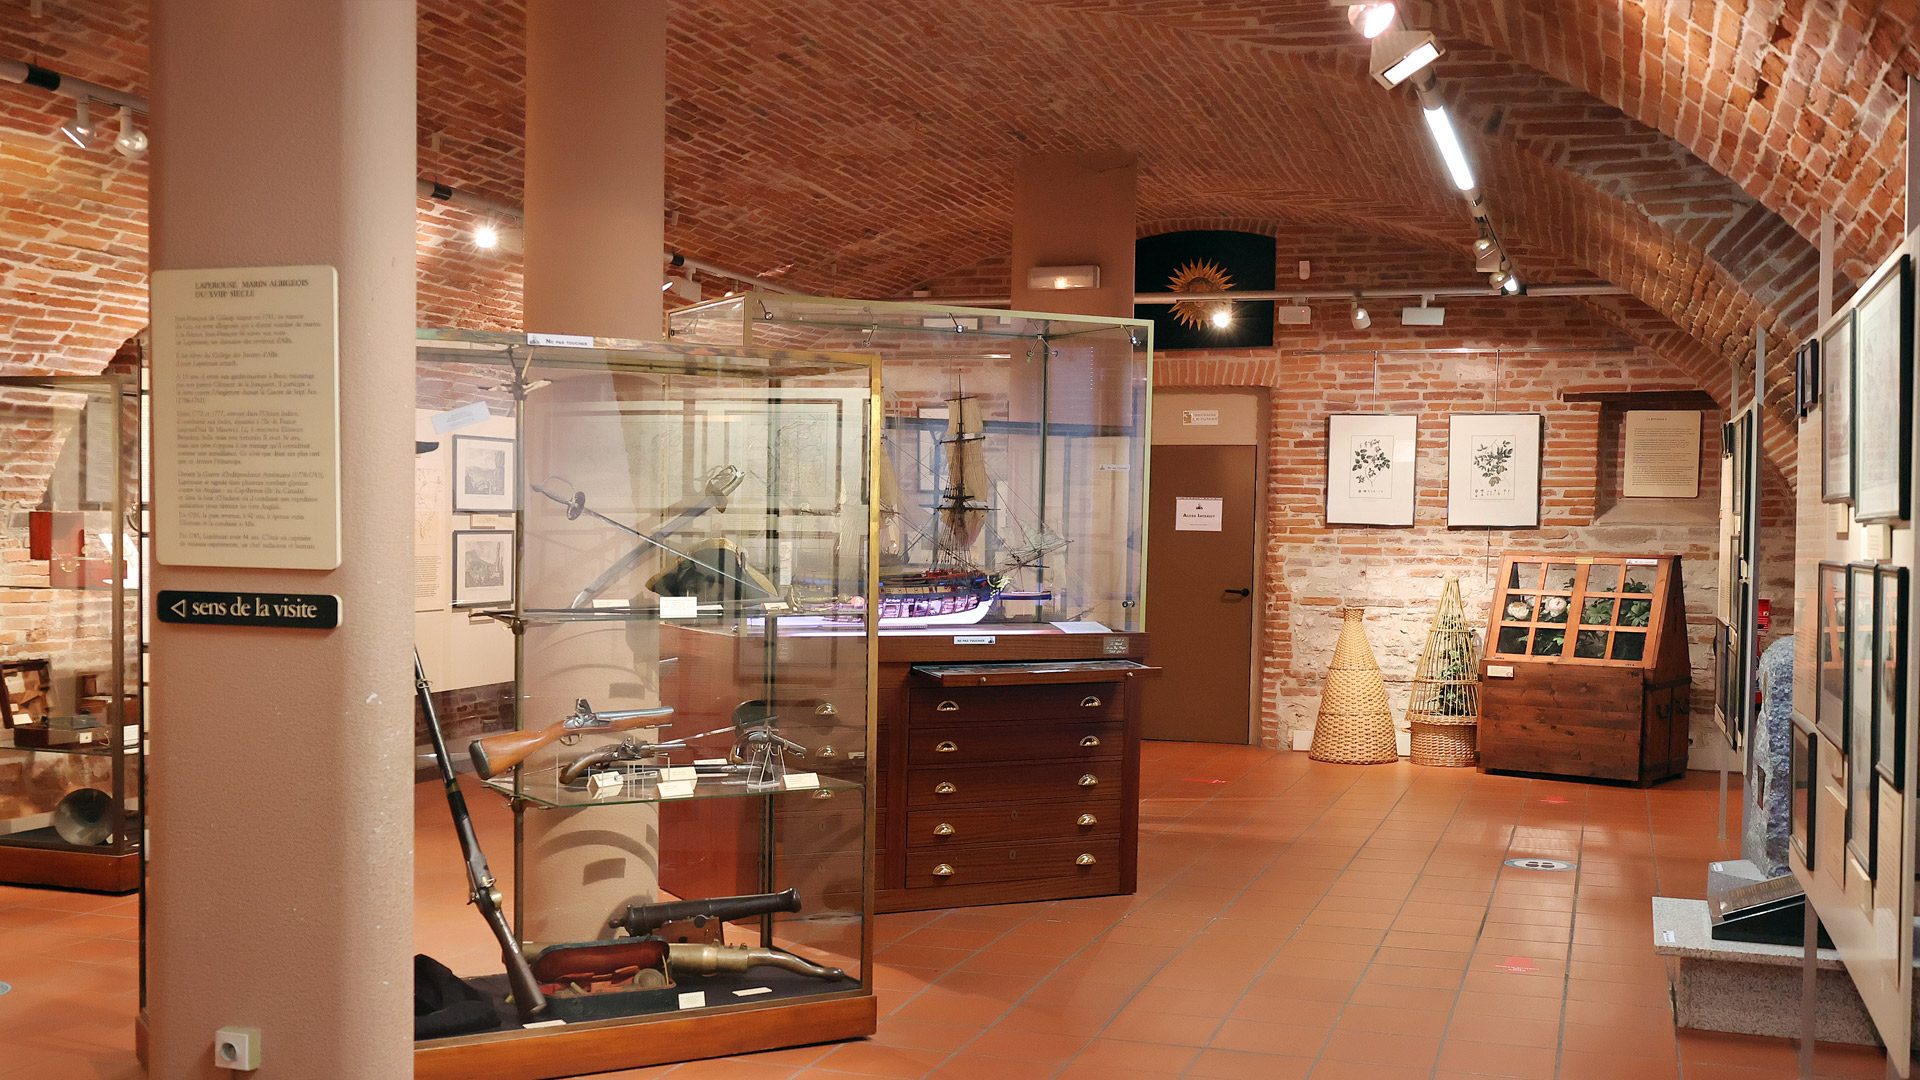 阿爾比 Lapérouse 博物館，阿爾比金塊，一個了解這位船長的冒險和任務的參考博物館